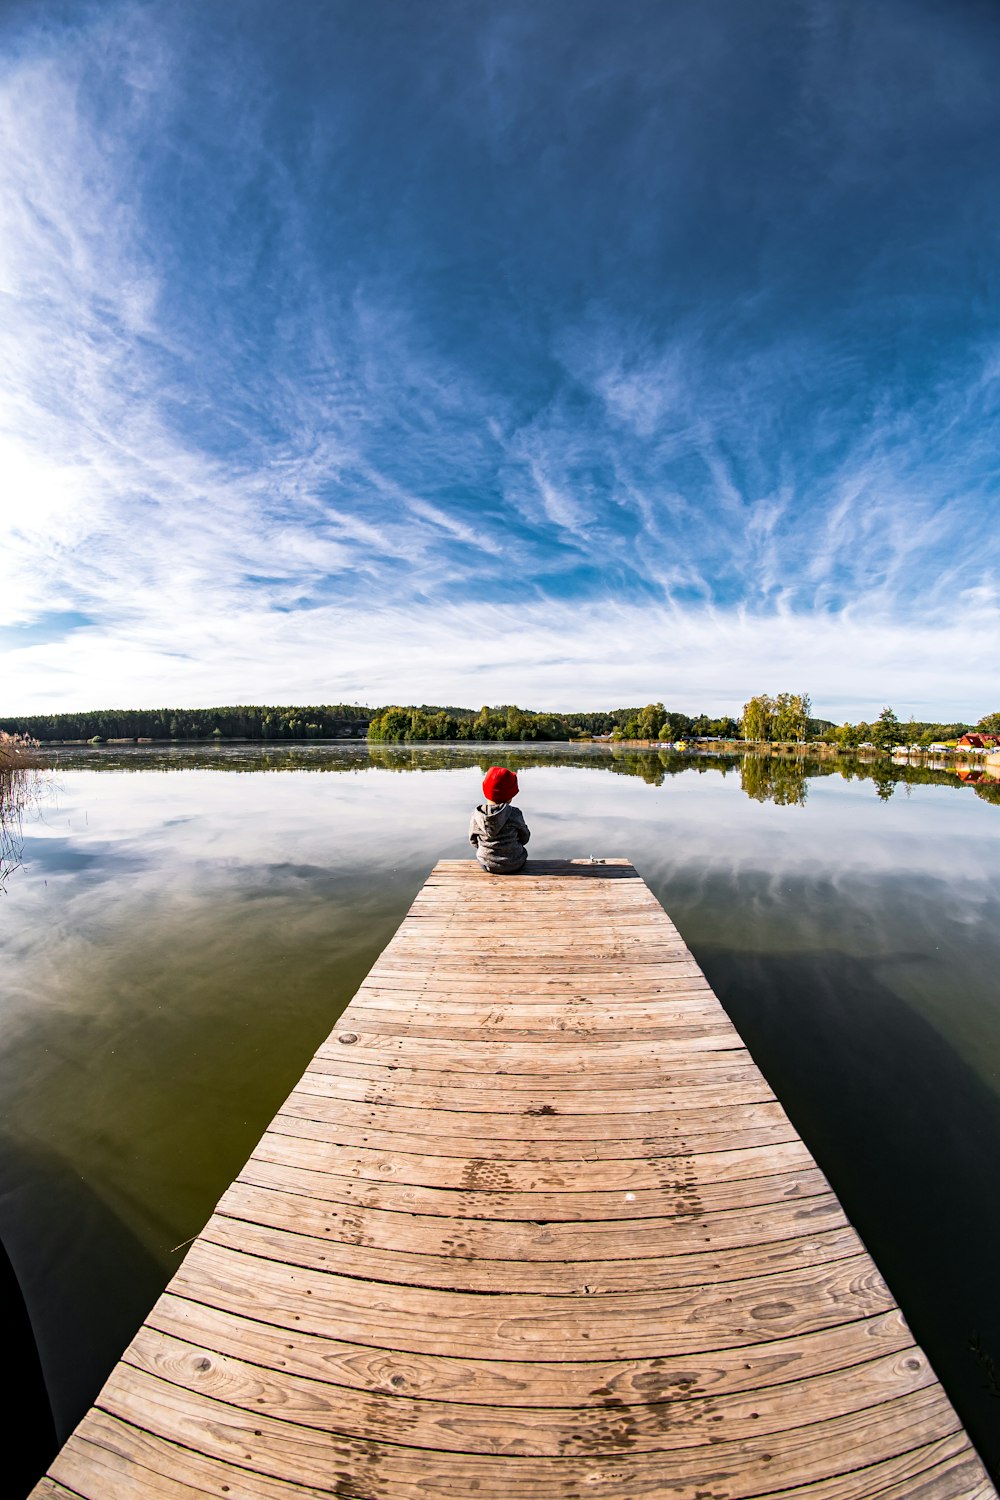 Una persona sentada en un muelle en medio de un lago